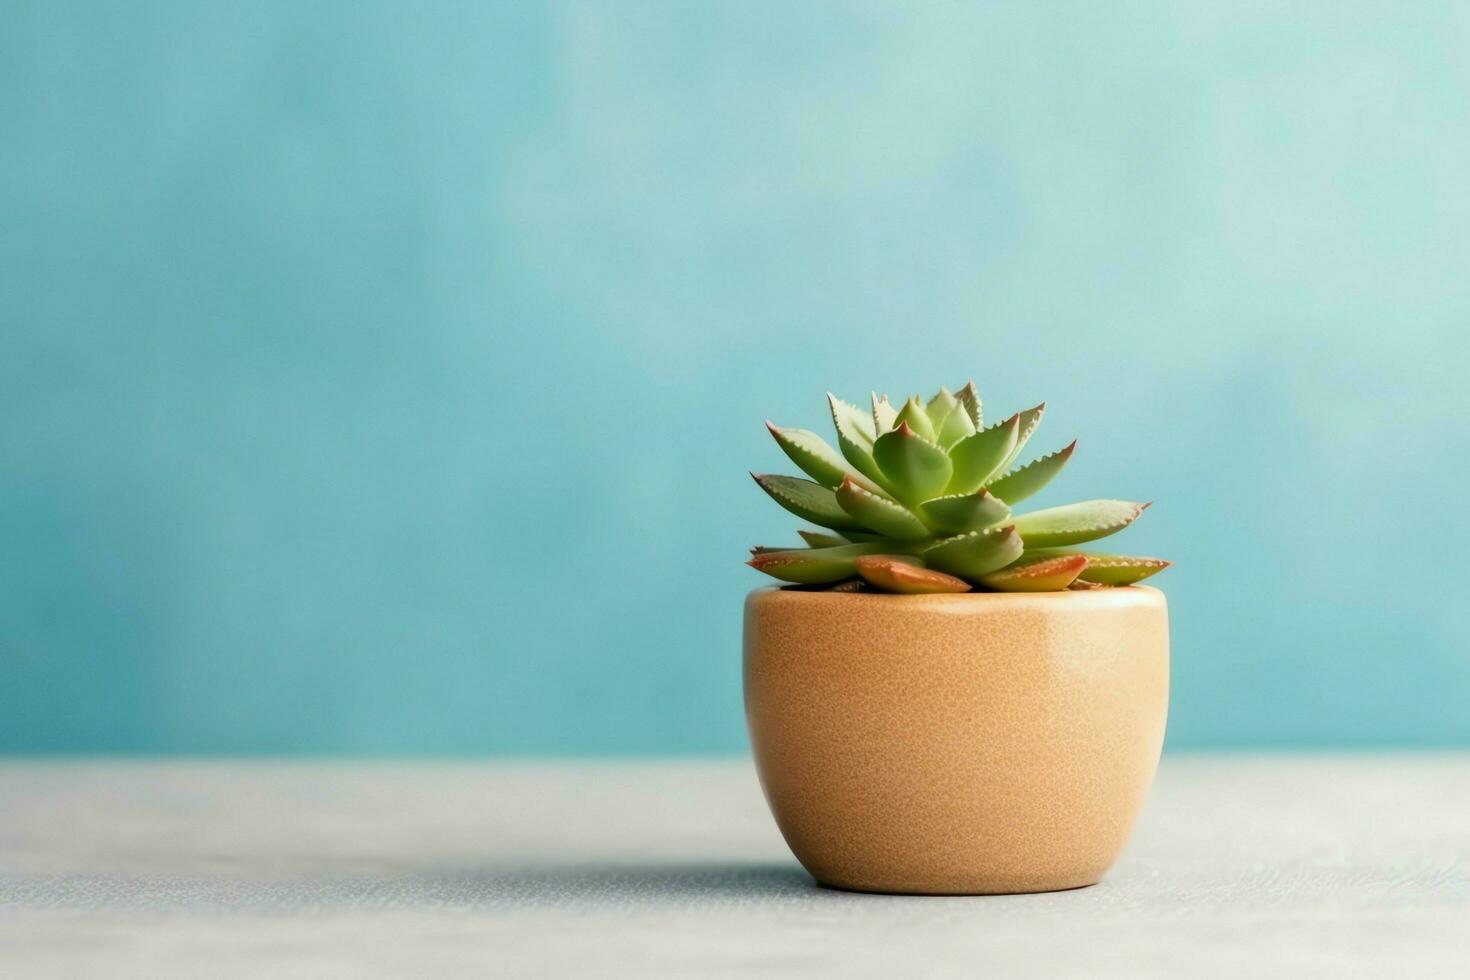 eingetopft saftig Pflanze gasteria oder klein Kaktus mit Kopieren Raum. Zuhause Gartenarbeit und minimalistisch Pflanze Konzept durch ai generiert foto